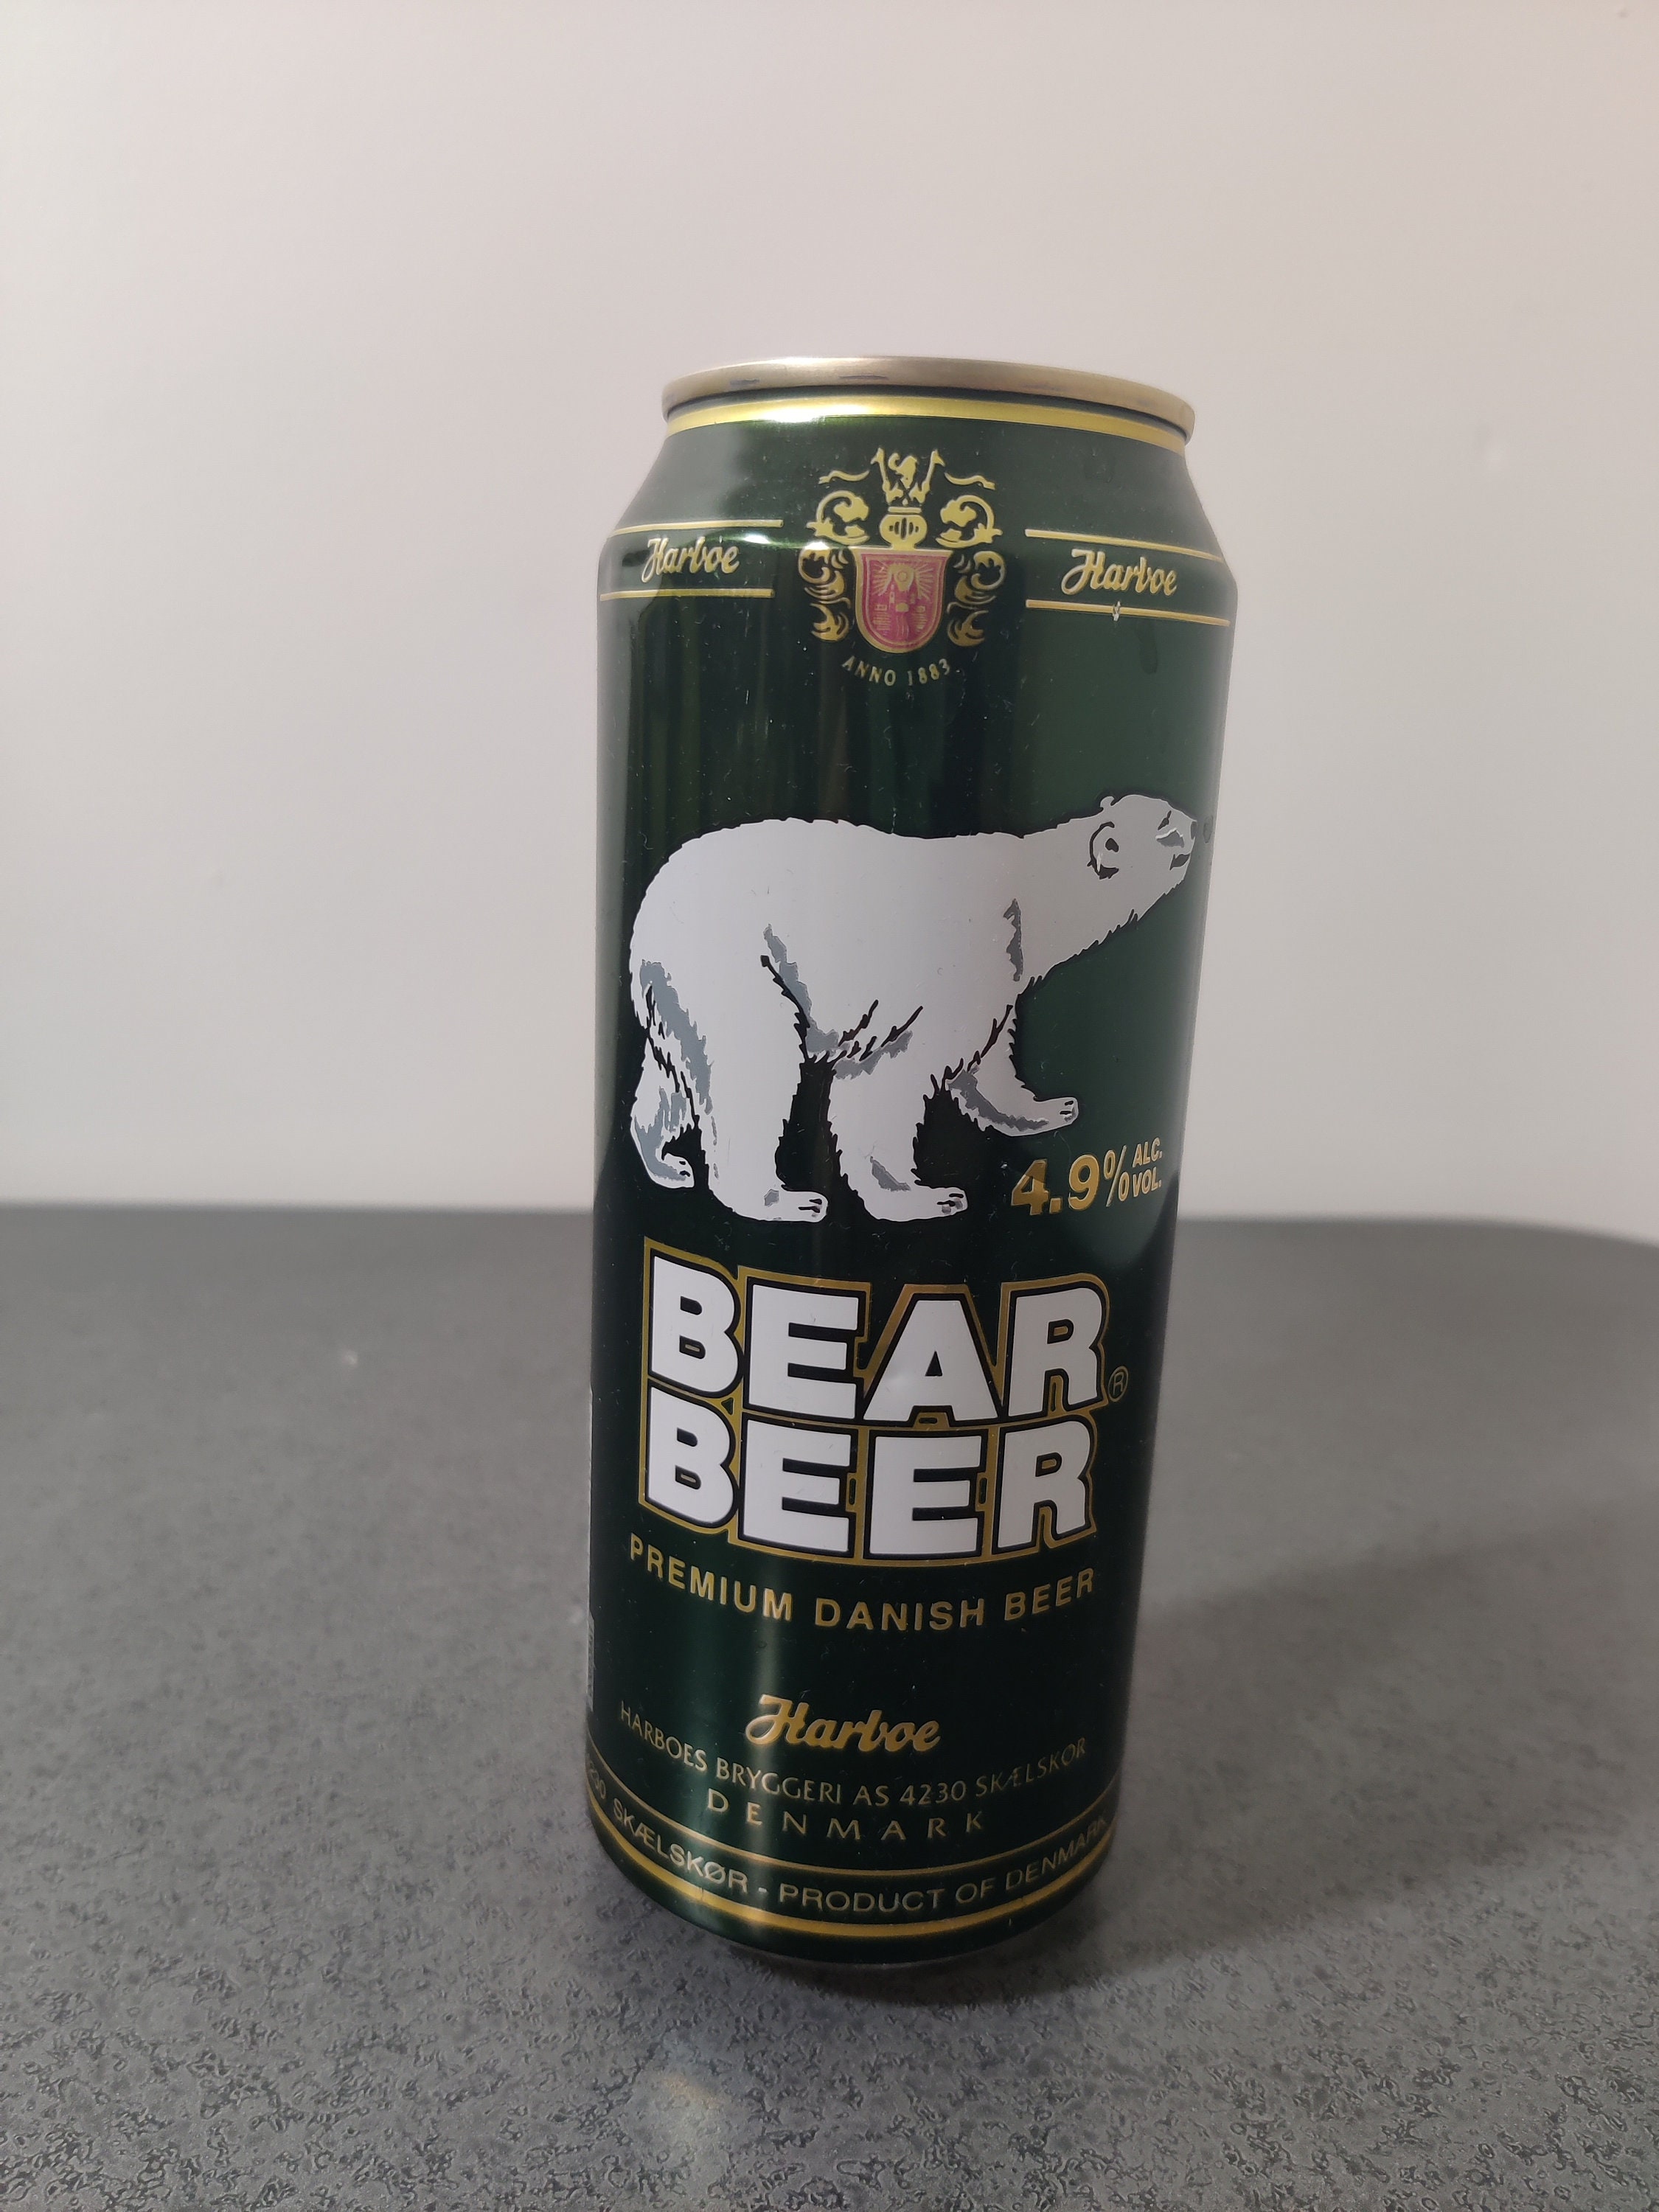 Grizzly Bear Beer Painting Groomsmen Gifts Kodiak Brown Ale 